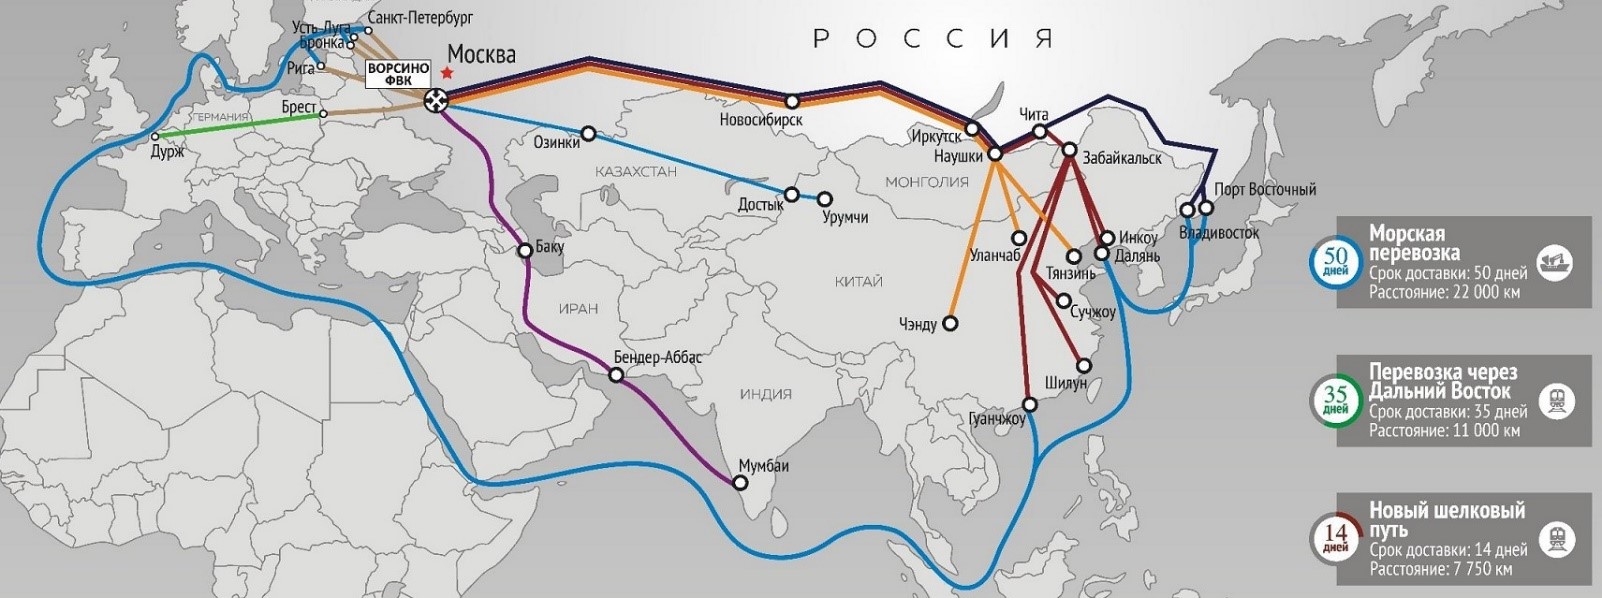 Россия разгоняется. Транзит грузов через "Шелковый путь", кто заработает больше?